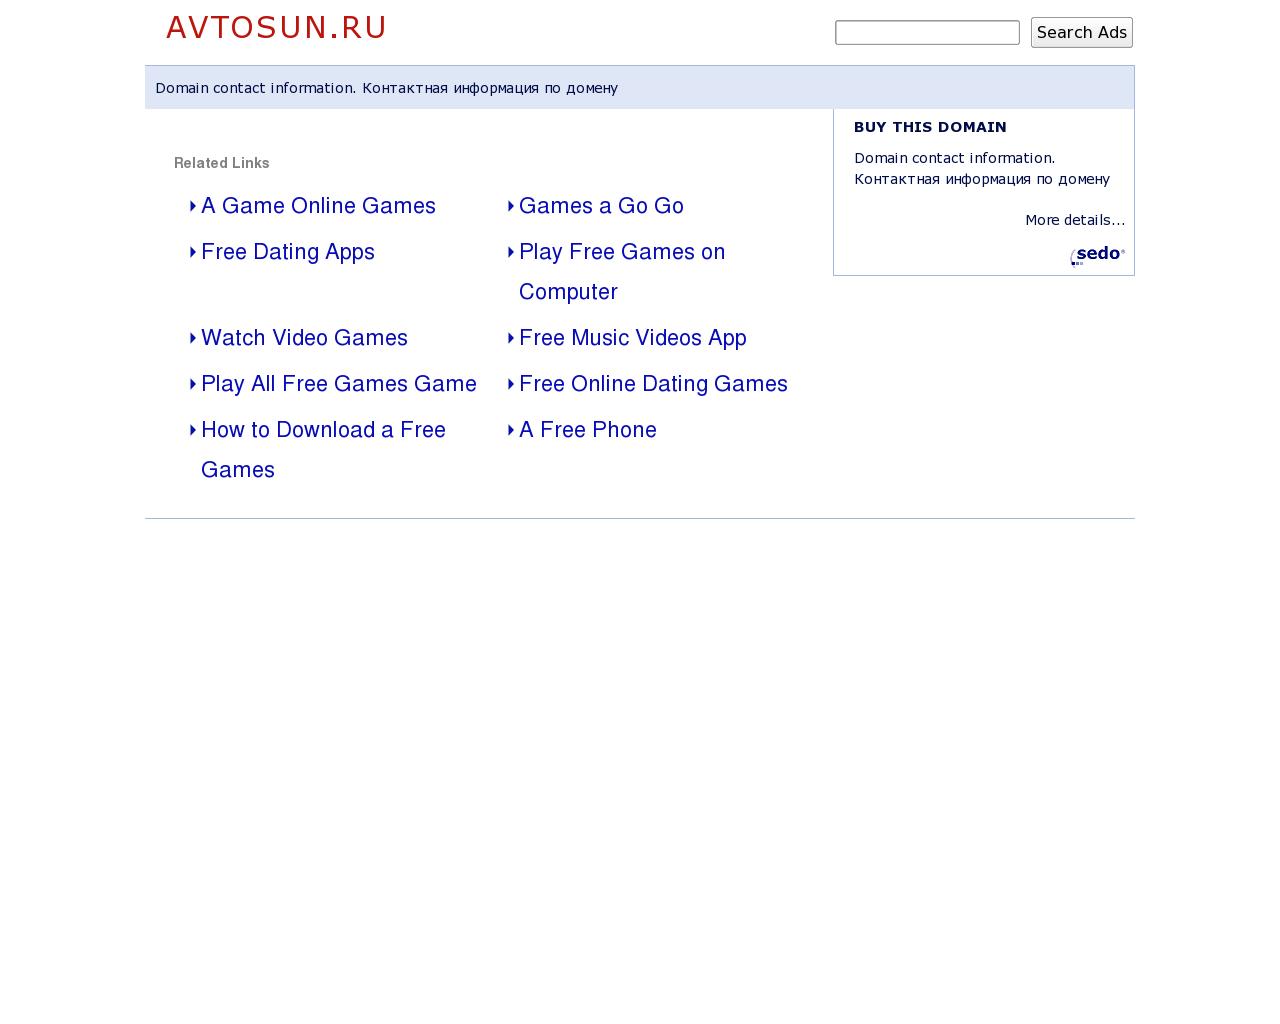 Изображение сайта avtosun.ru в разрешении 1280x1024